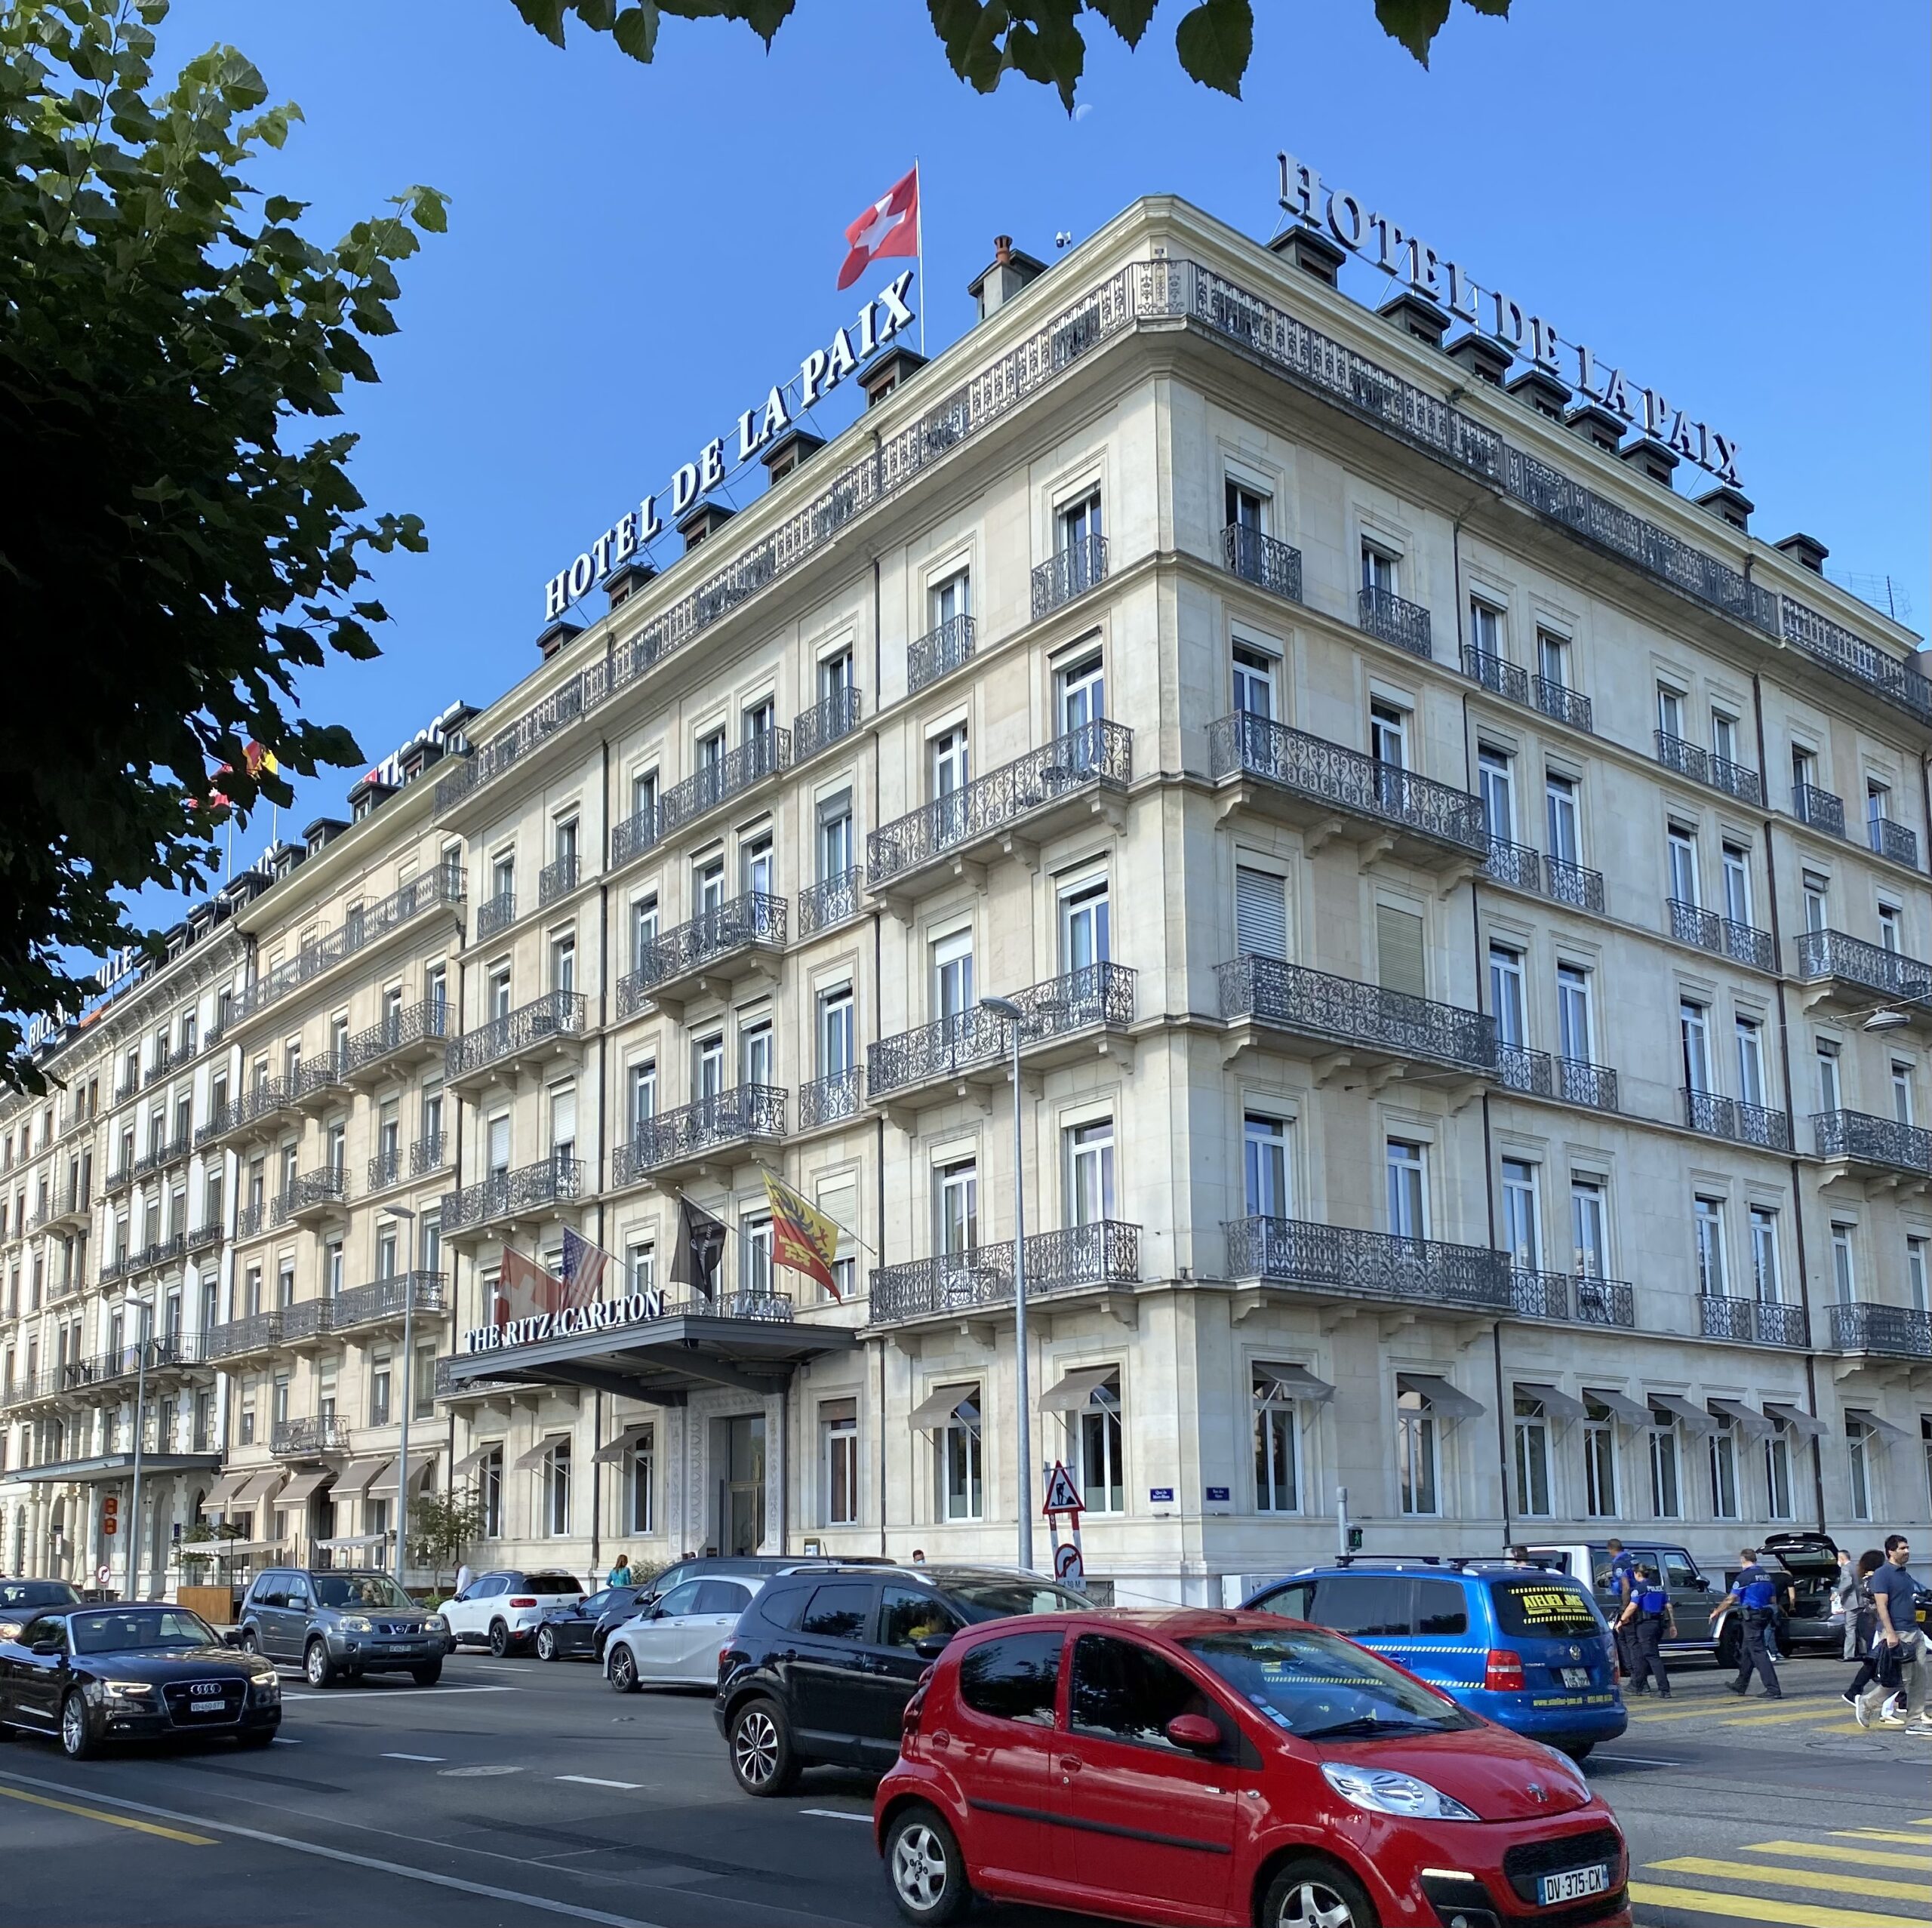 Ritz Carlton Geneva, a Marriott Bonvoy partner hotel.